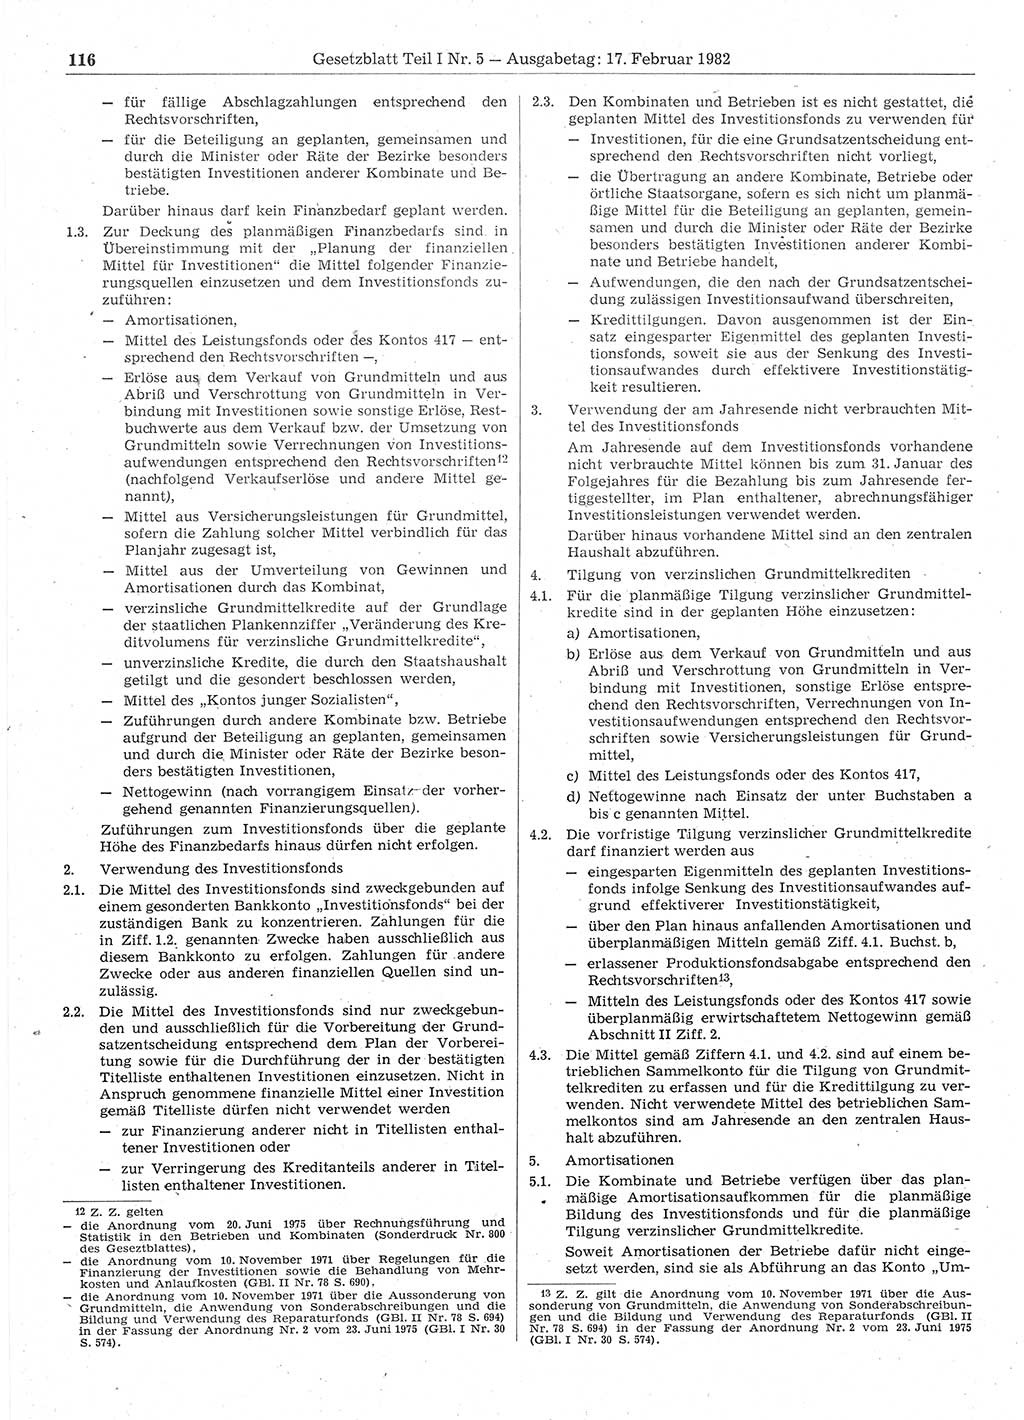 Gesetzblatt (GBl.) der Deutschen Demokratischen Republik (DDR) Teil Ⅰ 1982, Seite 116 (GBl. DDR Ⅰ 1982, S. 116)